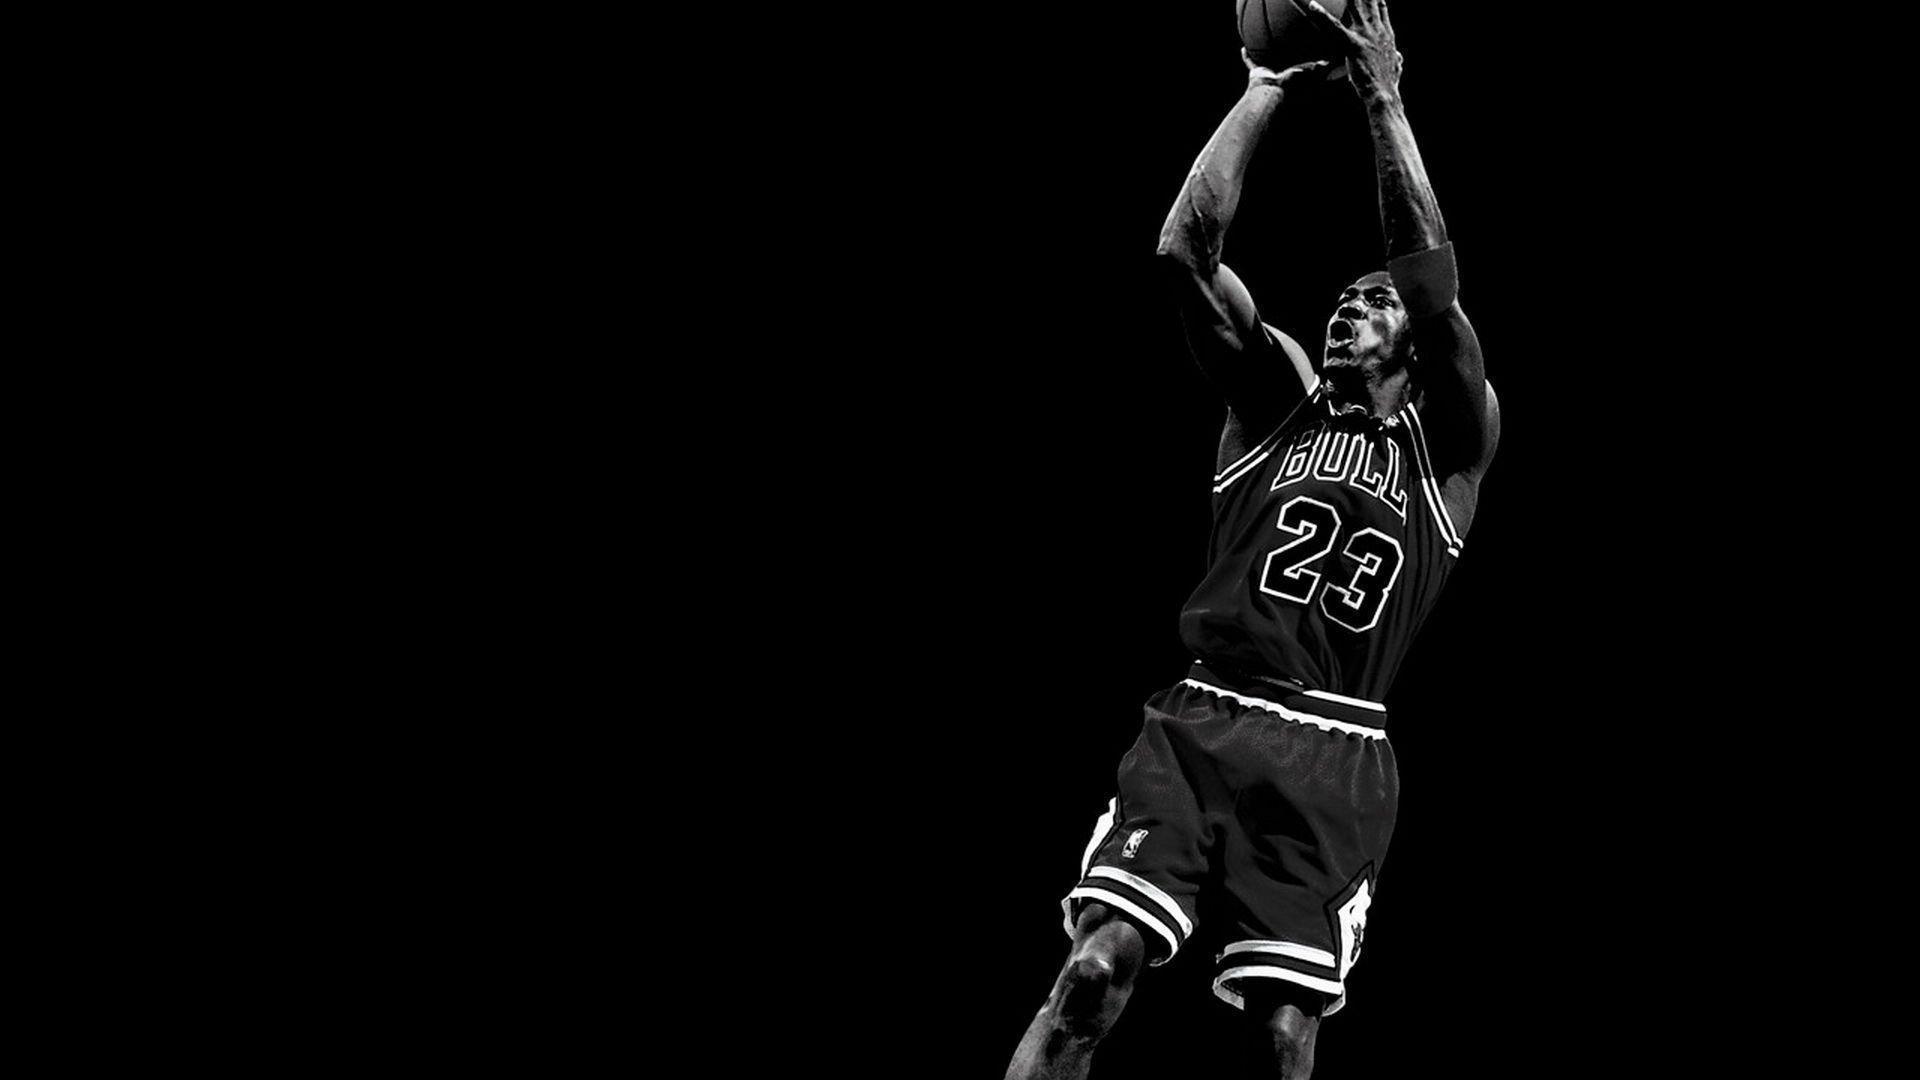 Michael Jordan The Last Dance Wallpapers - Wallpaper Cave